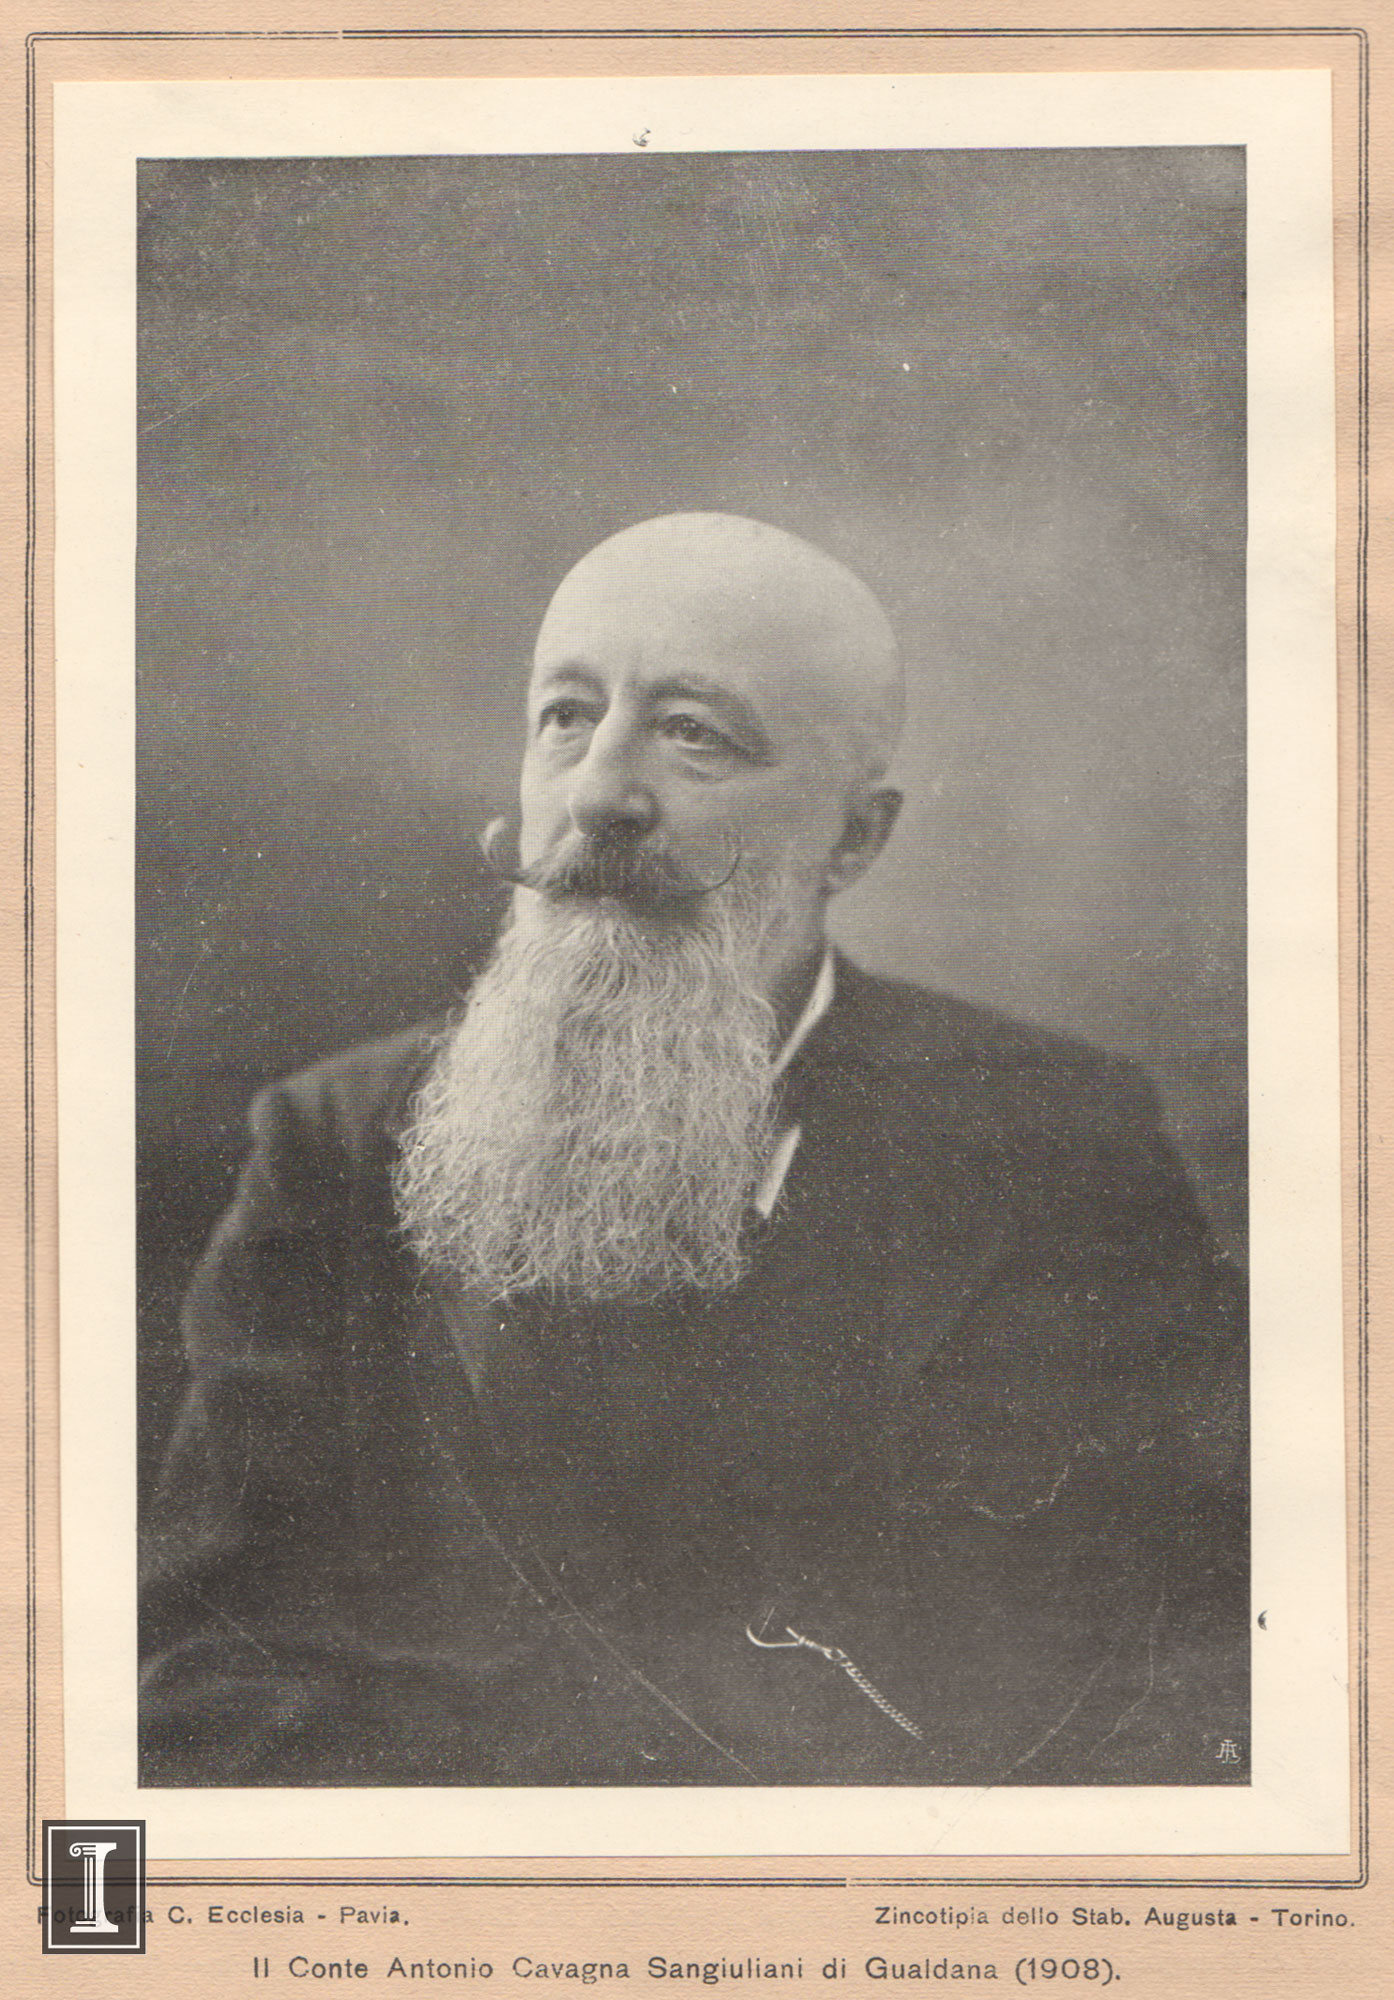 Count Cavagna in 1908